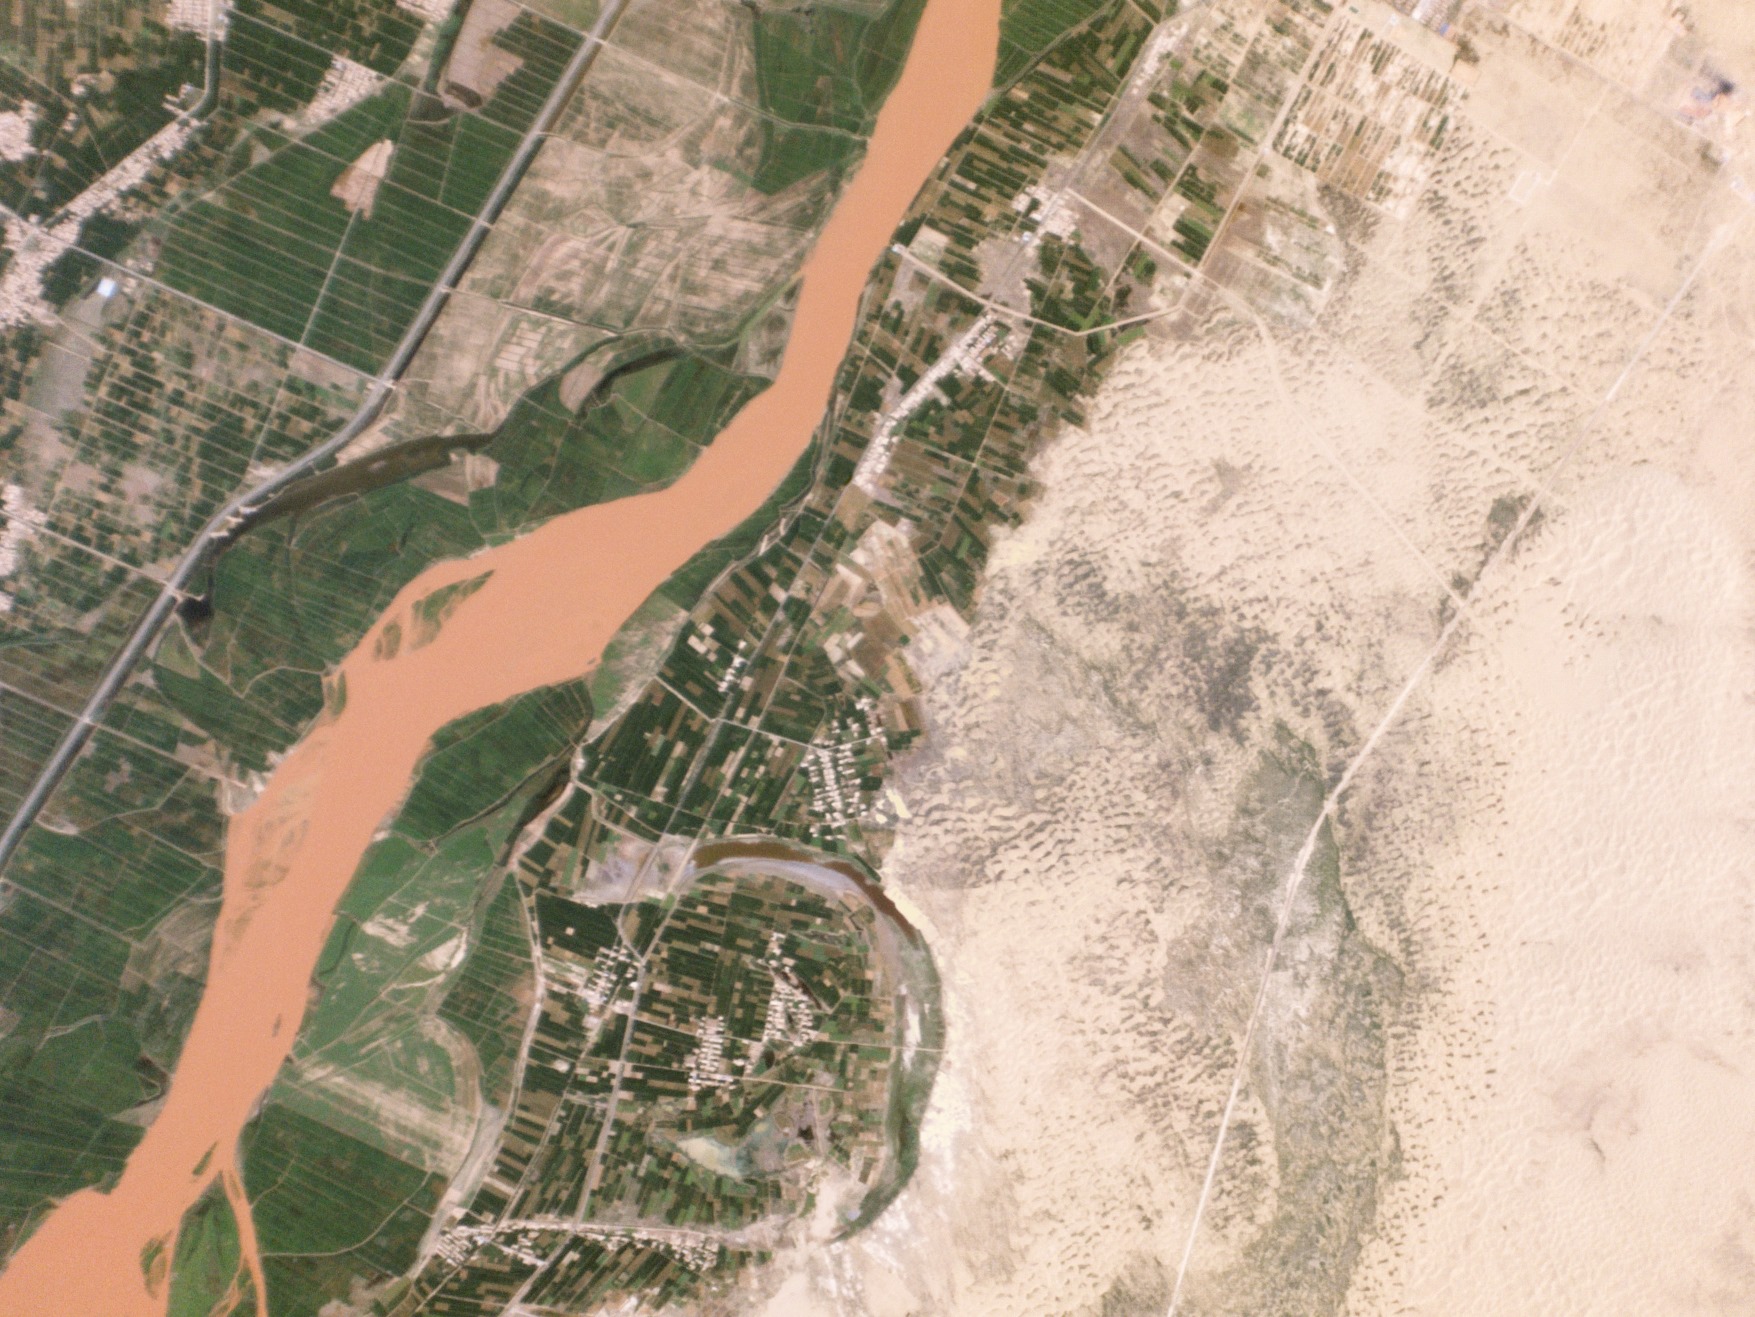 Рис. 5. Сельскохозяйственные земли, примыкающие к Желтой реки, недалеко от Тоужа в округе Пиньлюо, Китай, где осуществляется проект по контролю опустынивания для сохранения сельскохозяйственных угодий.